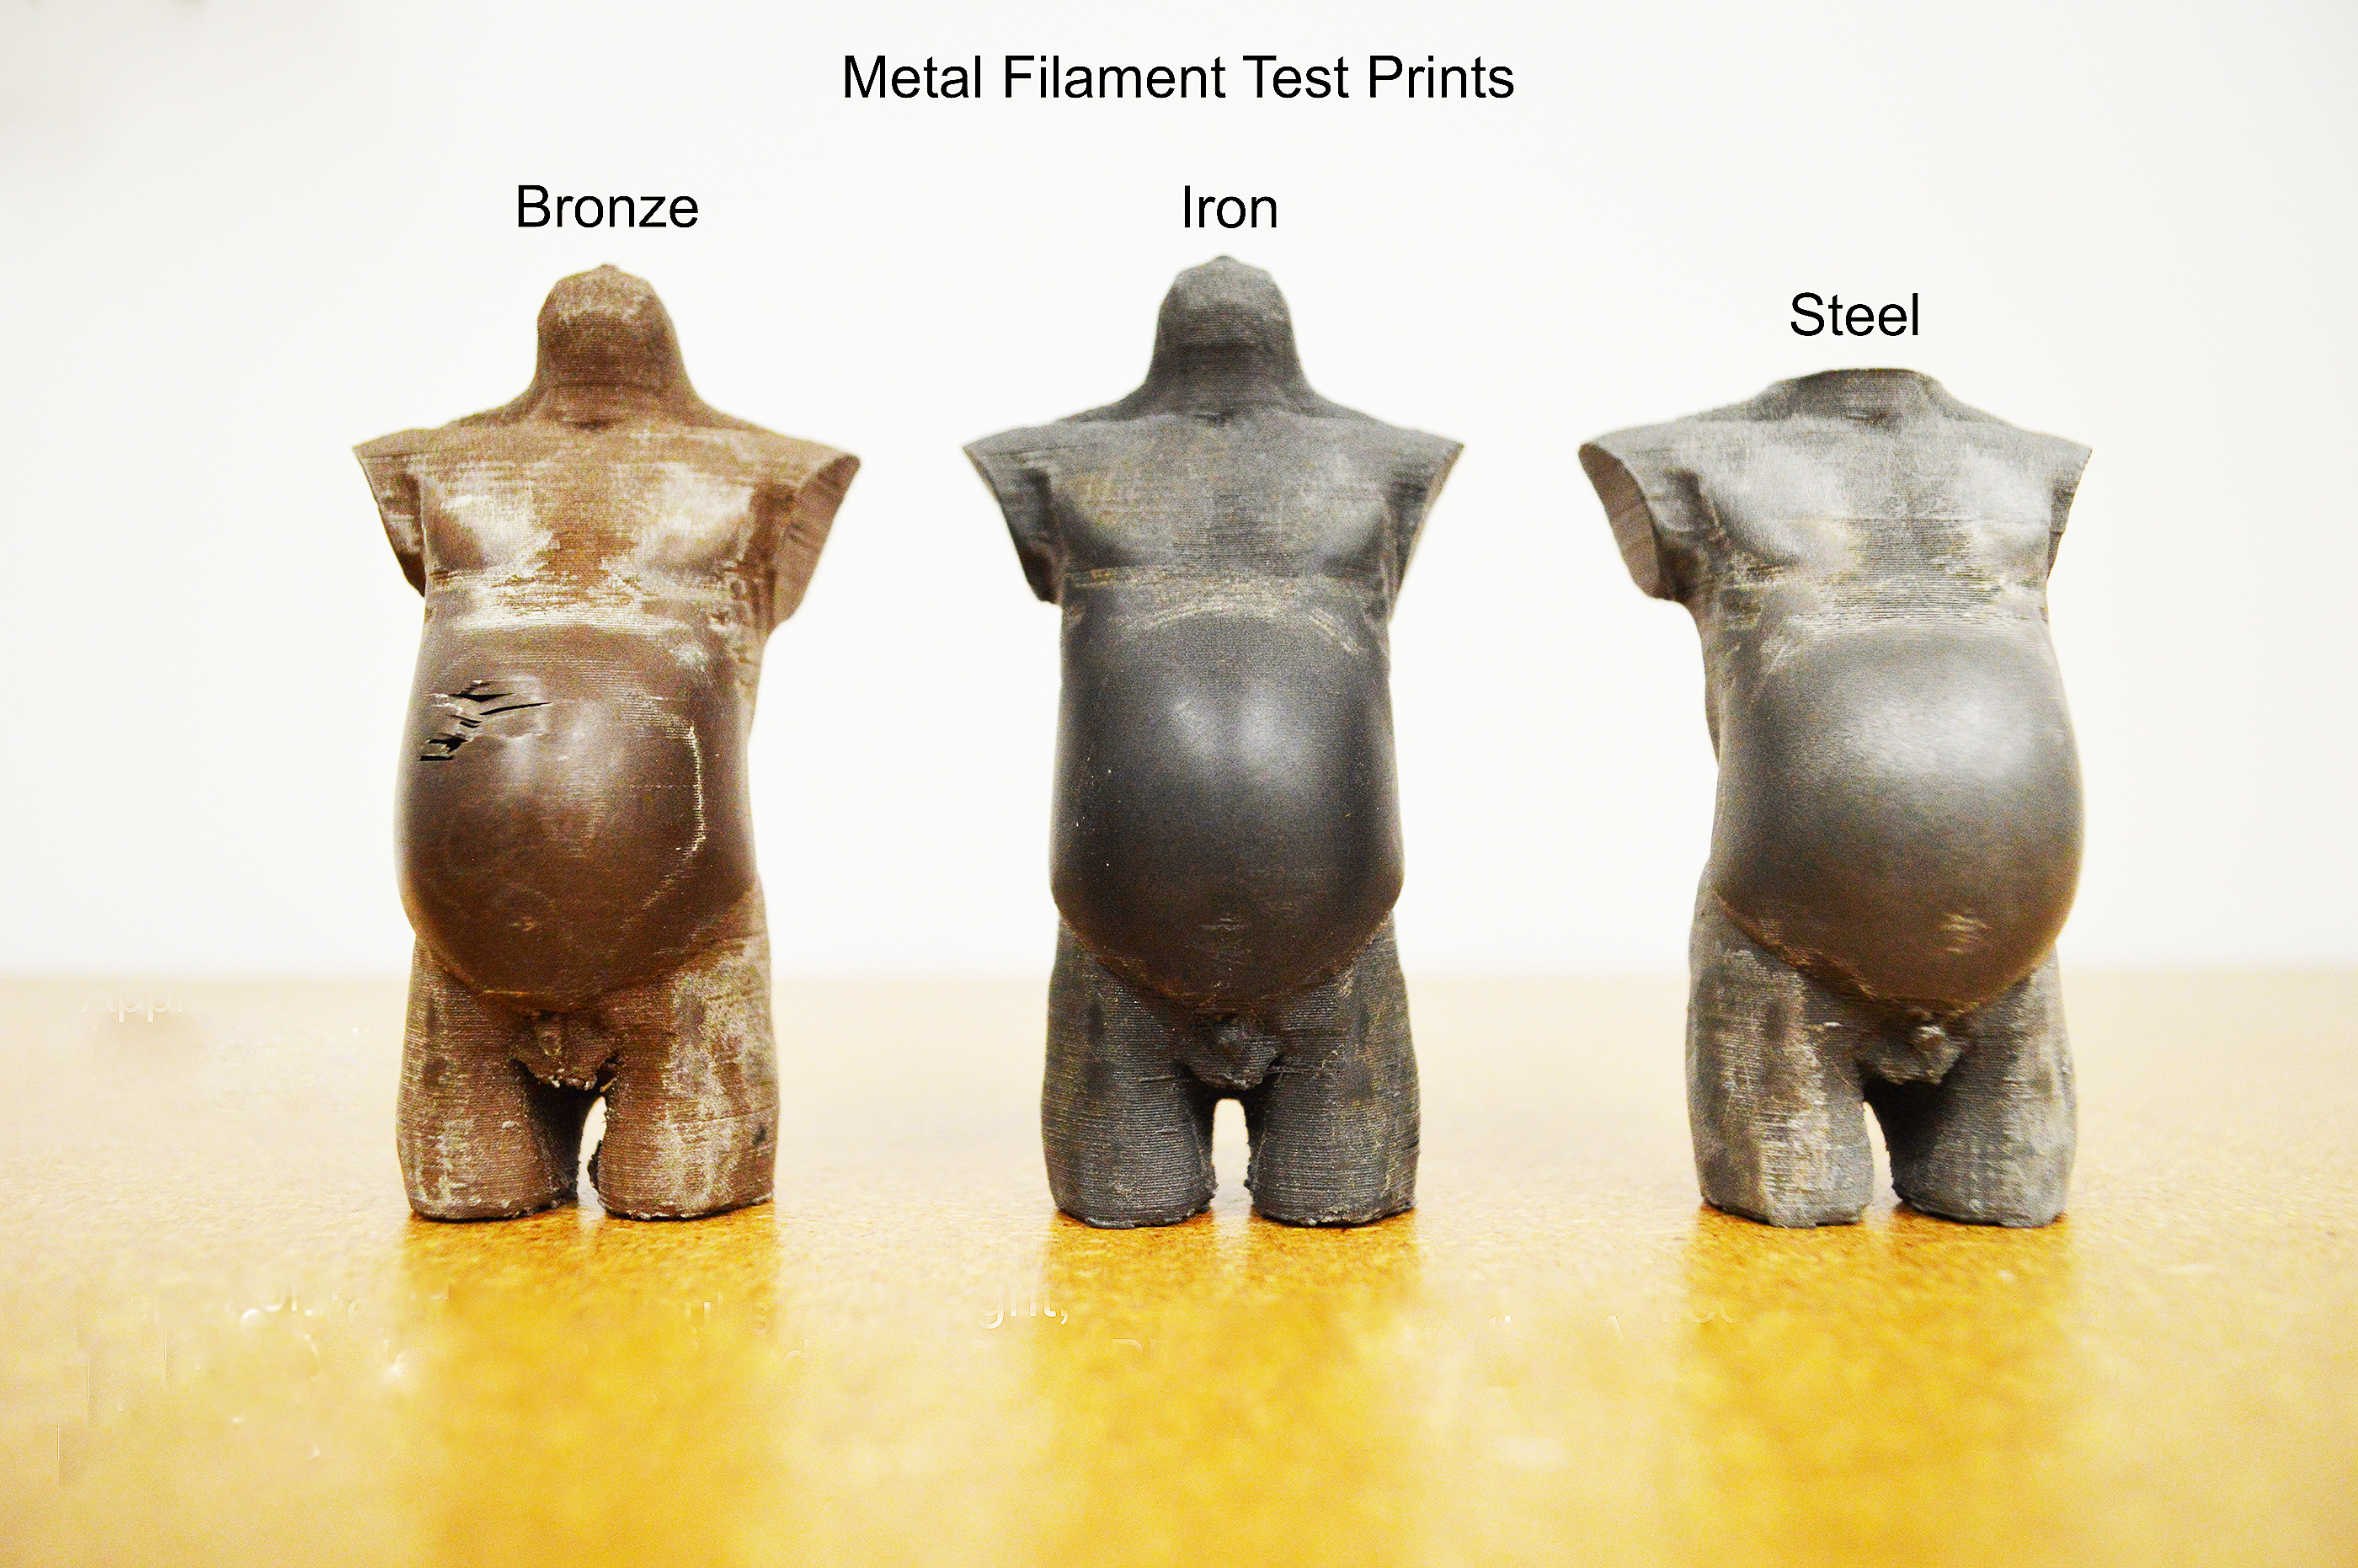 Materials tests of torsos